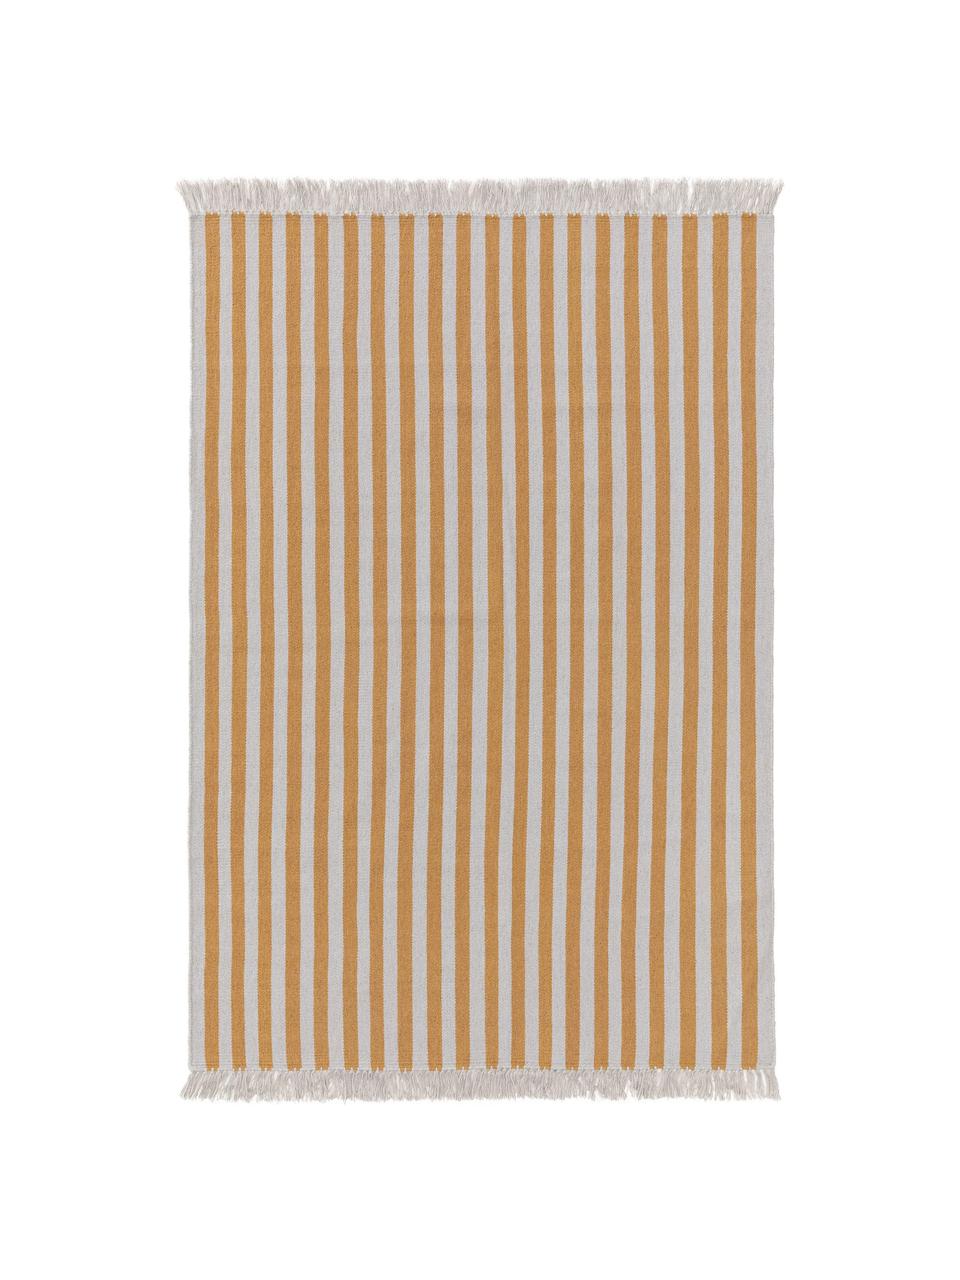 Dywan z wełny Gitta, 90% wełna, 10% bawełna
Włókna dywanów wełnianych mogą nieznacznie rozluźniać się w pierwszych tygodniach użytkowania, co ustępuje po pewnym czasie, Żółty, jasny szary, S 200 x D 300 cm (Rozmiar L)